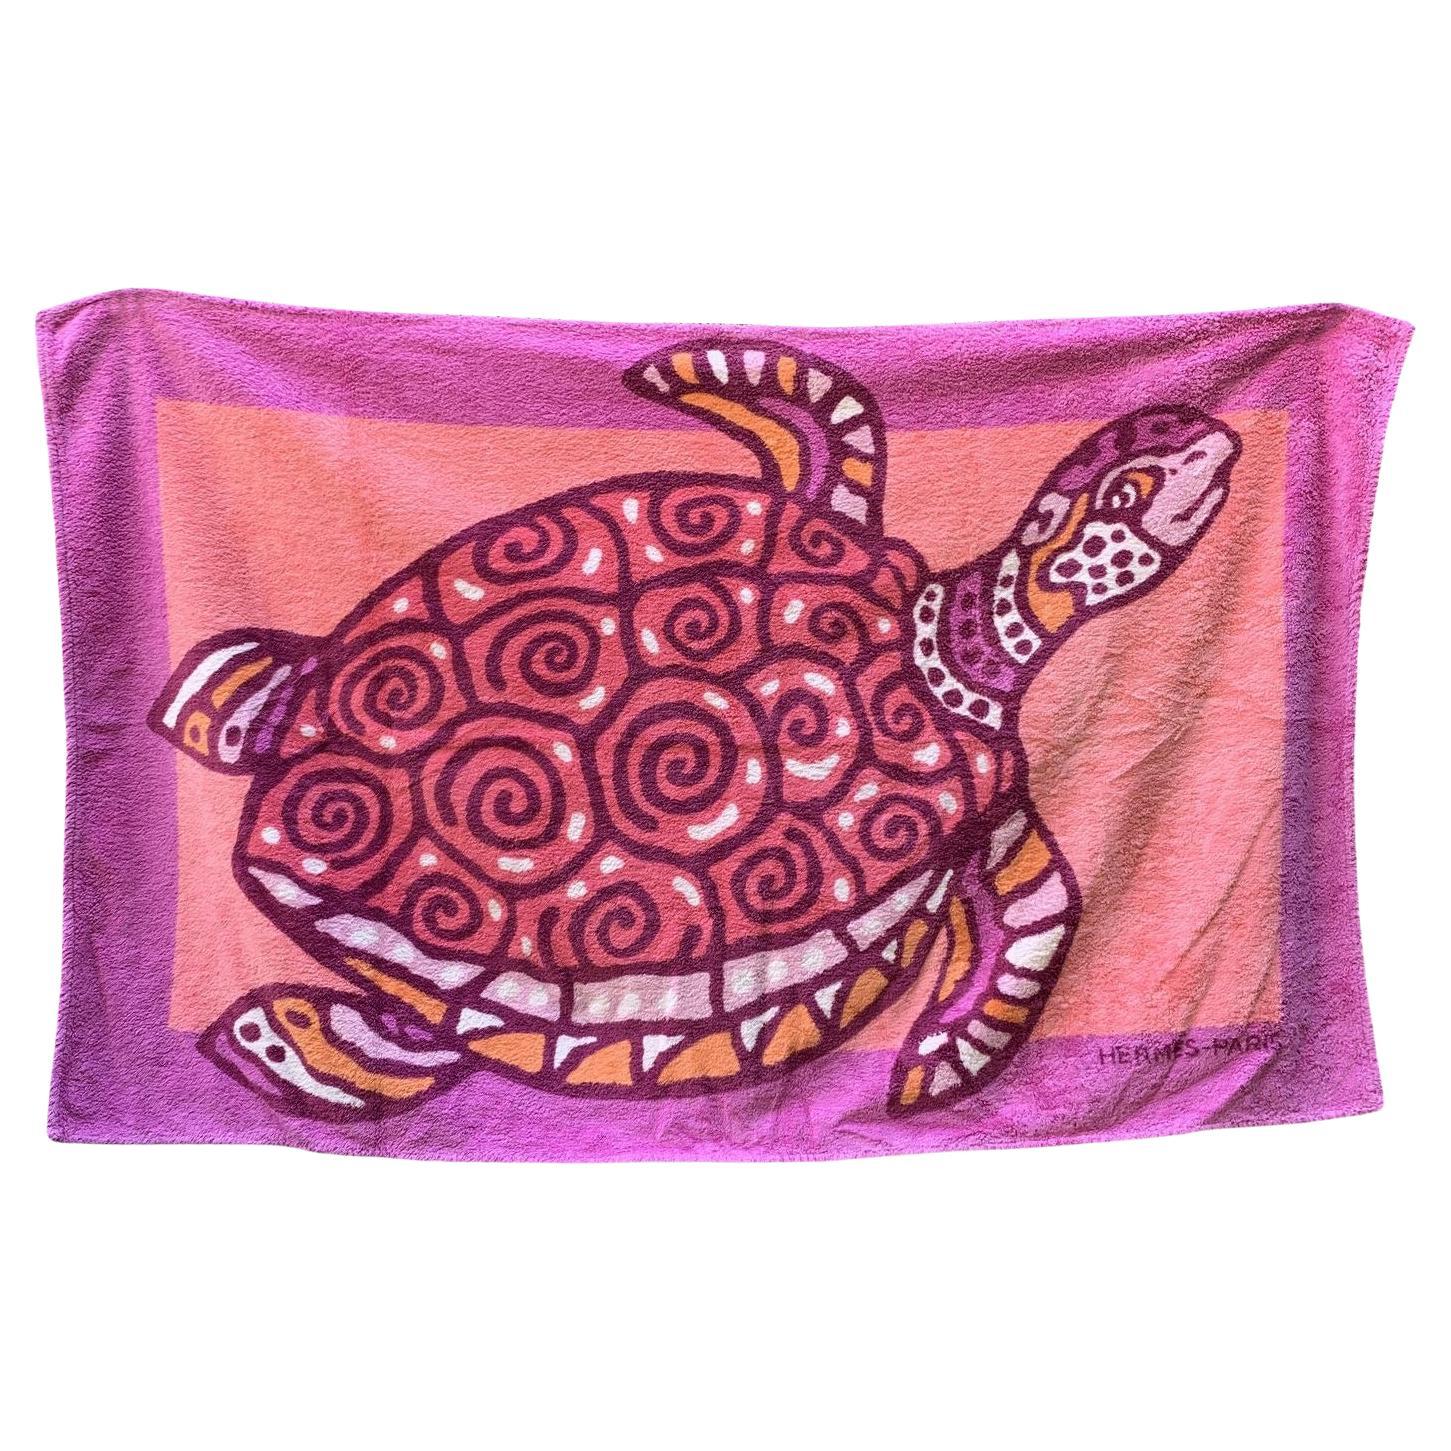 Hermes Vintage Rosa Schildkröten-Pool- Strandhandtuch aus Baumwolle